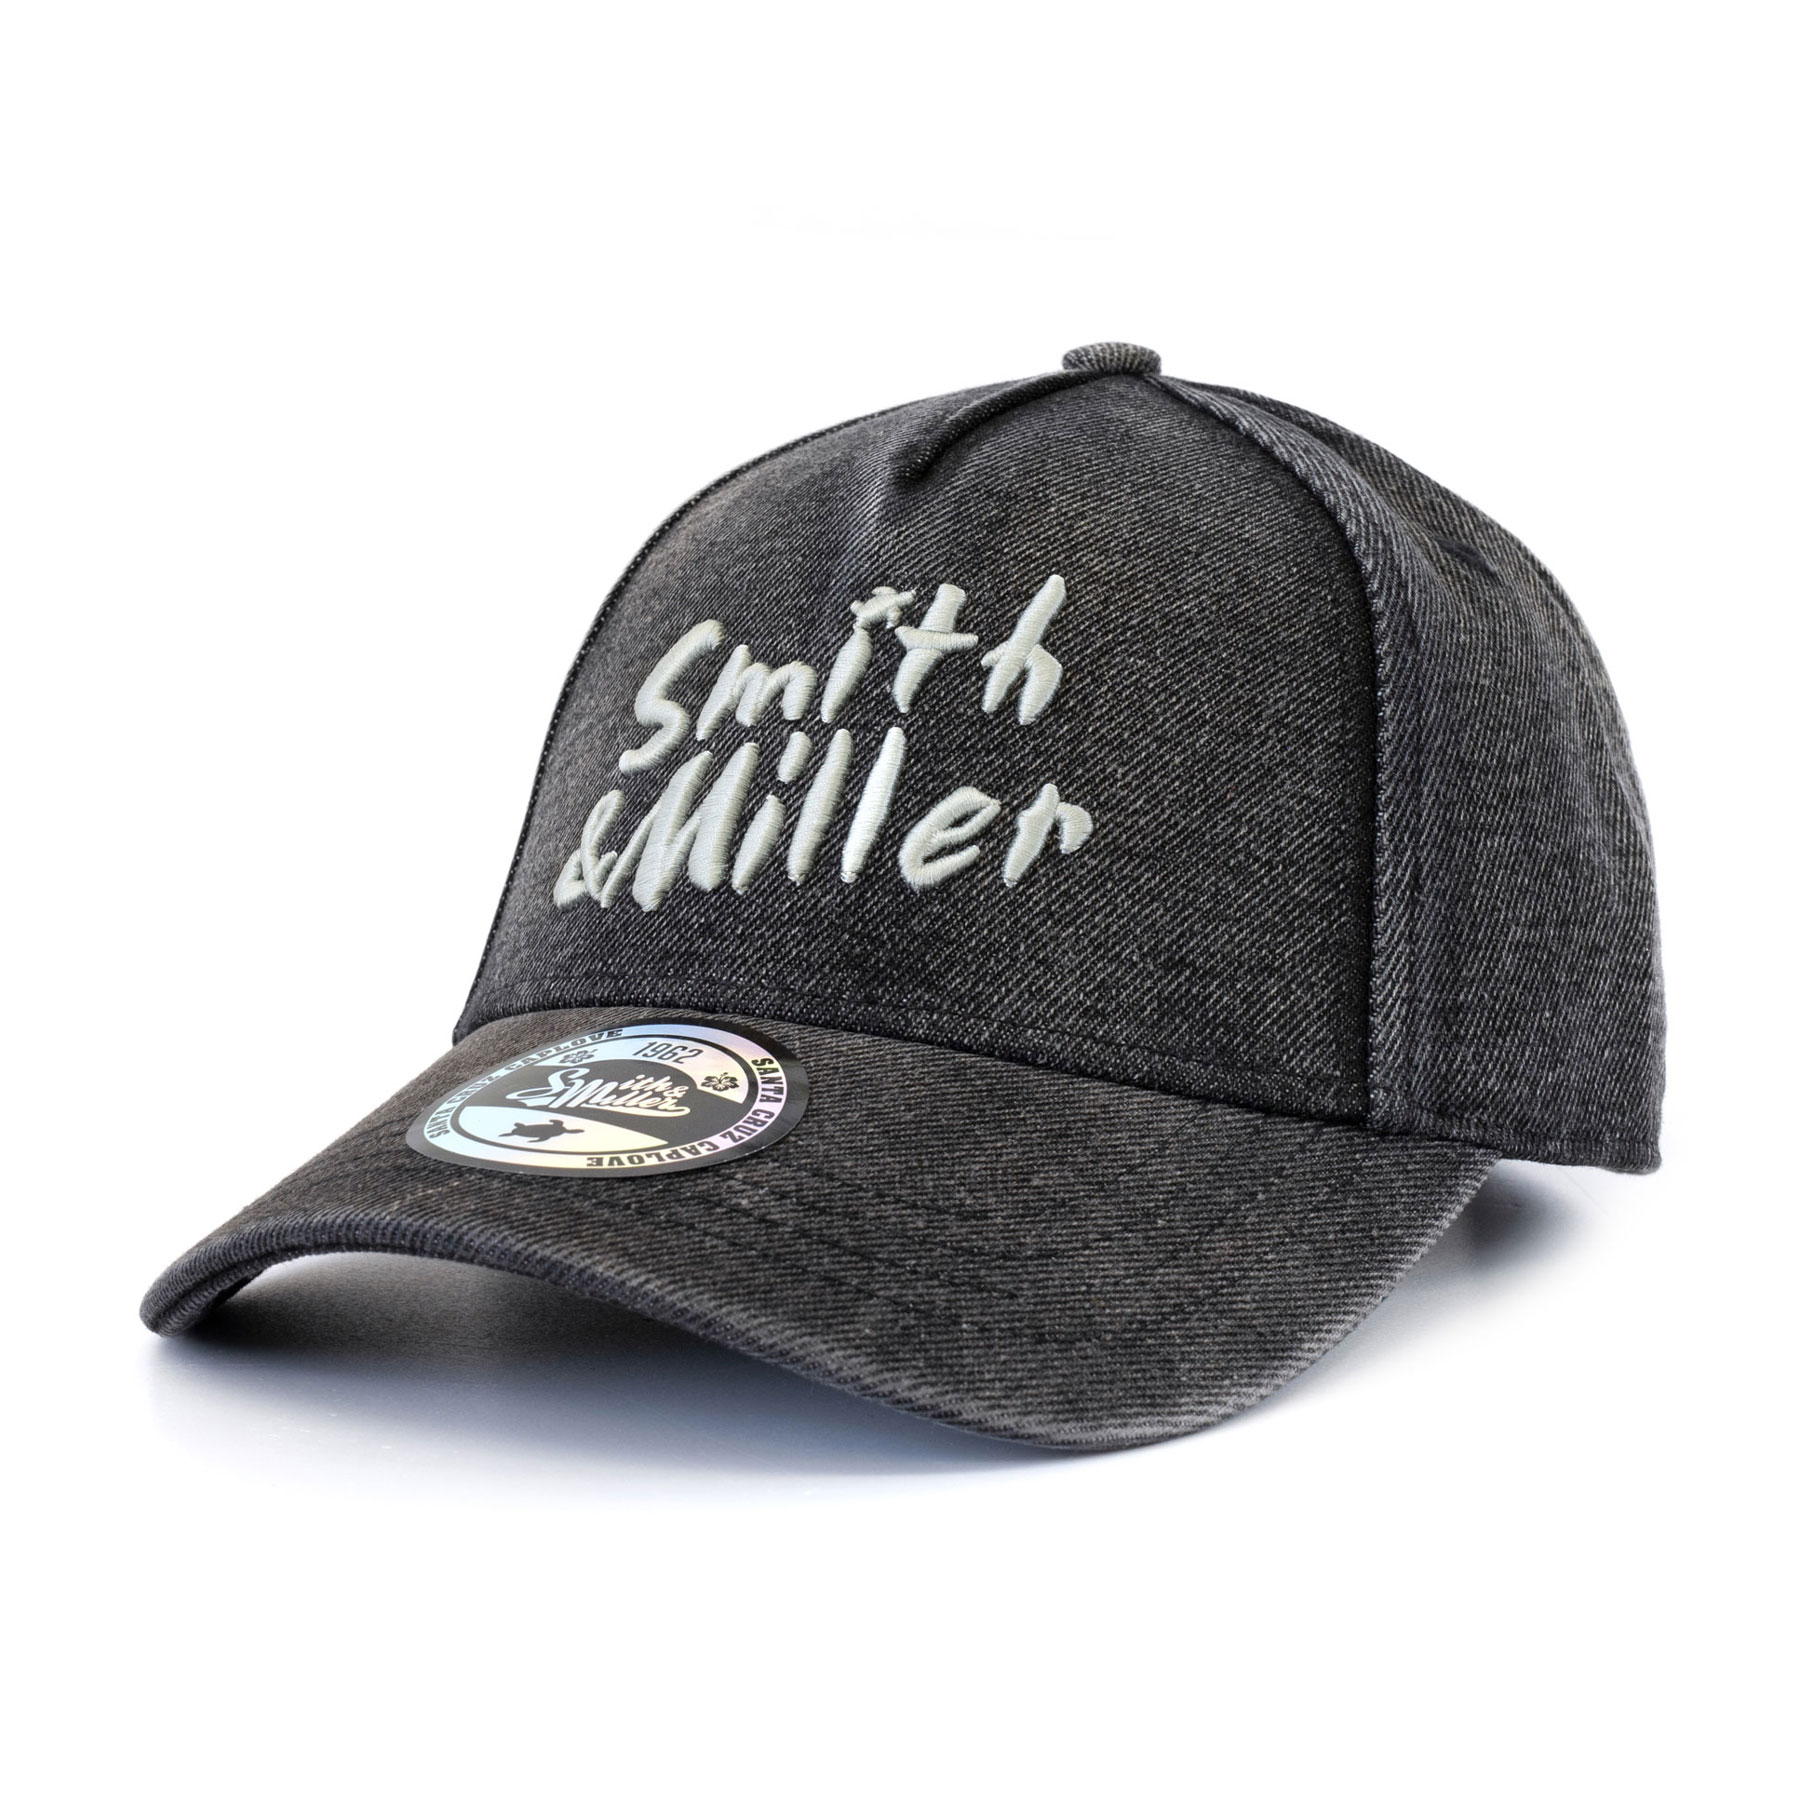 Smith & Miller Veto Curved Cap, black